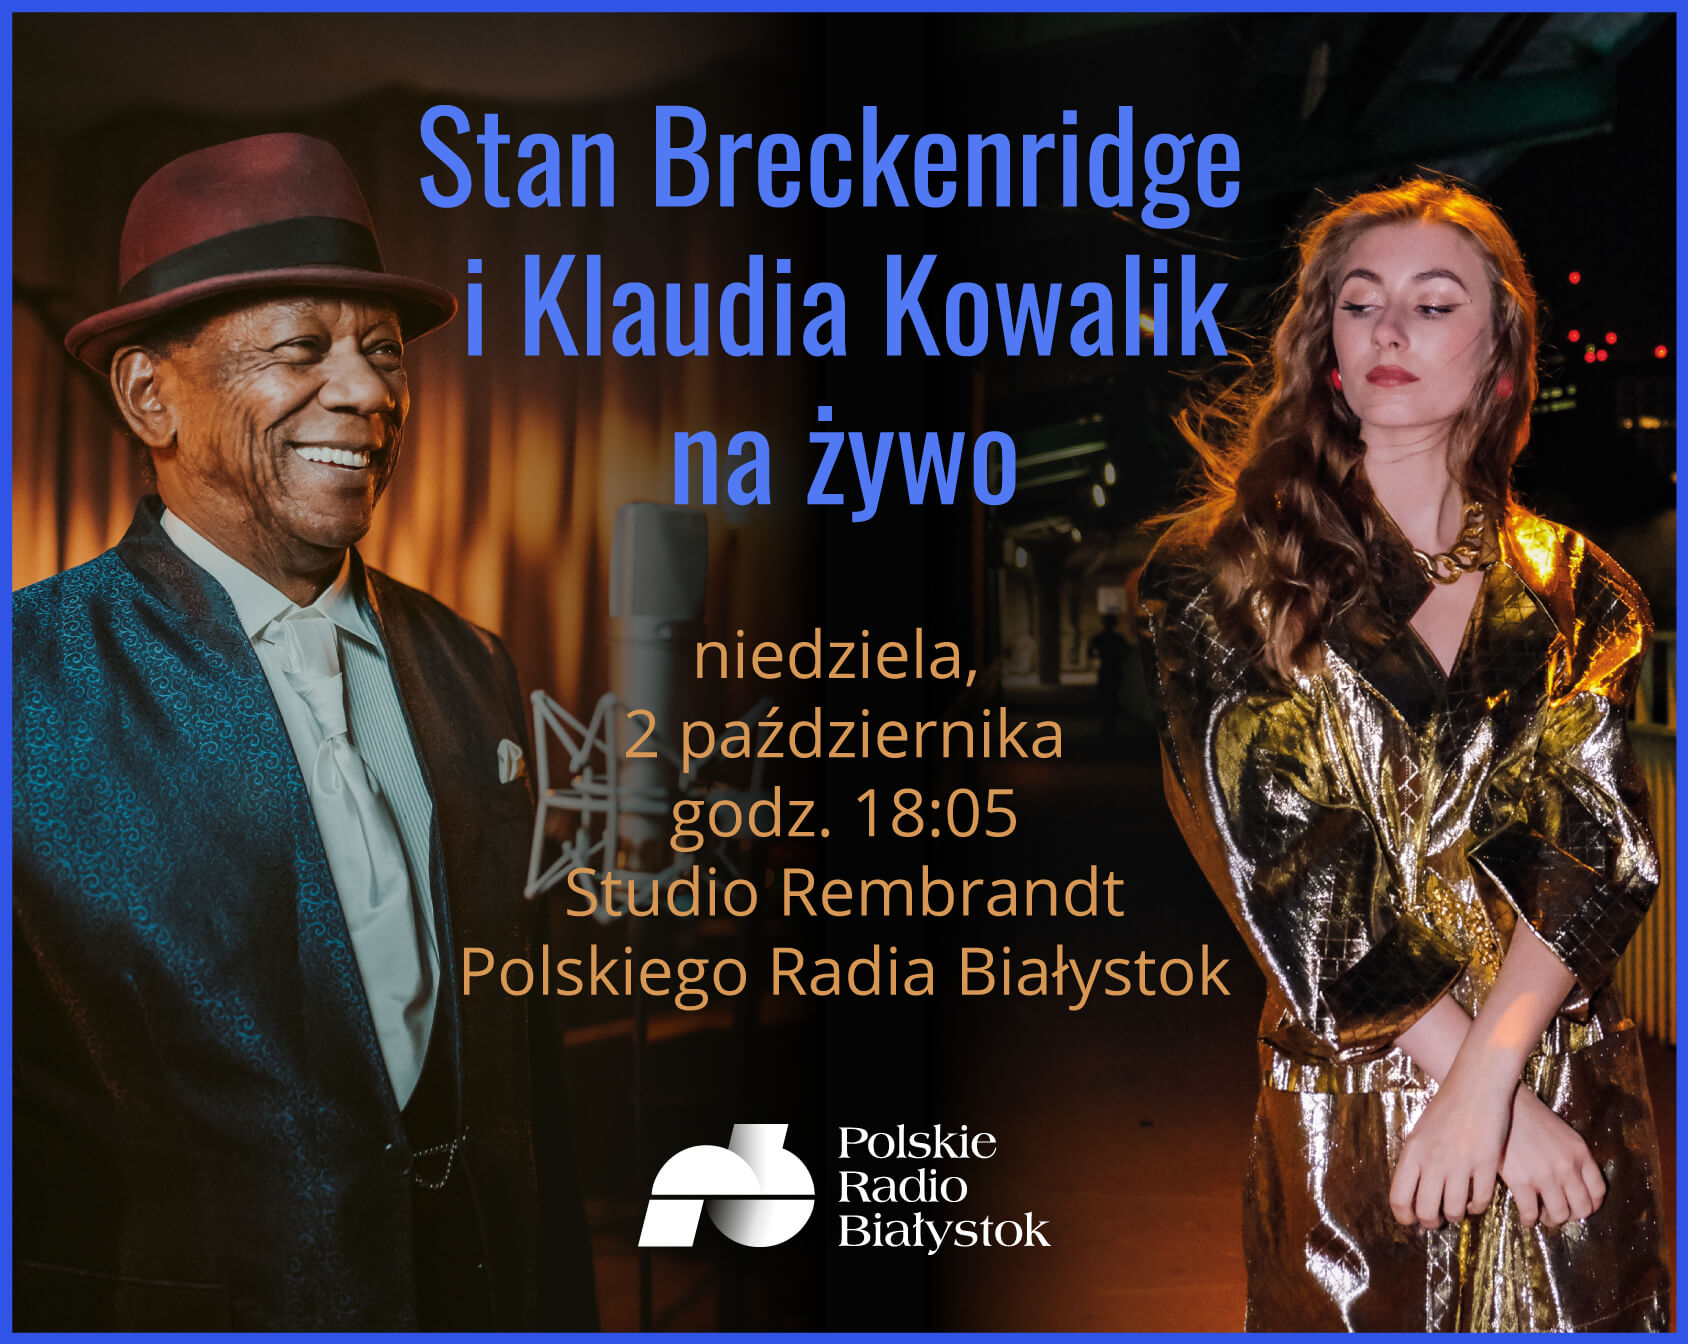 Stan Breckenridge i Klaudia Kowalik w Polskim Radiu Białystok